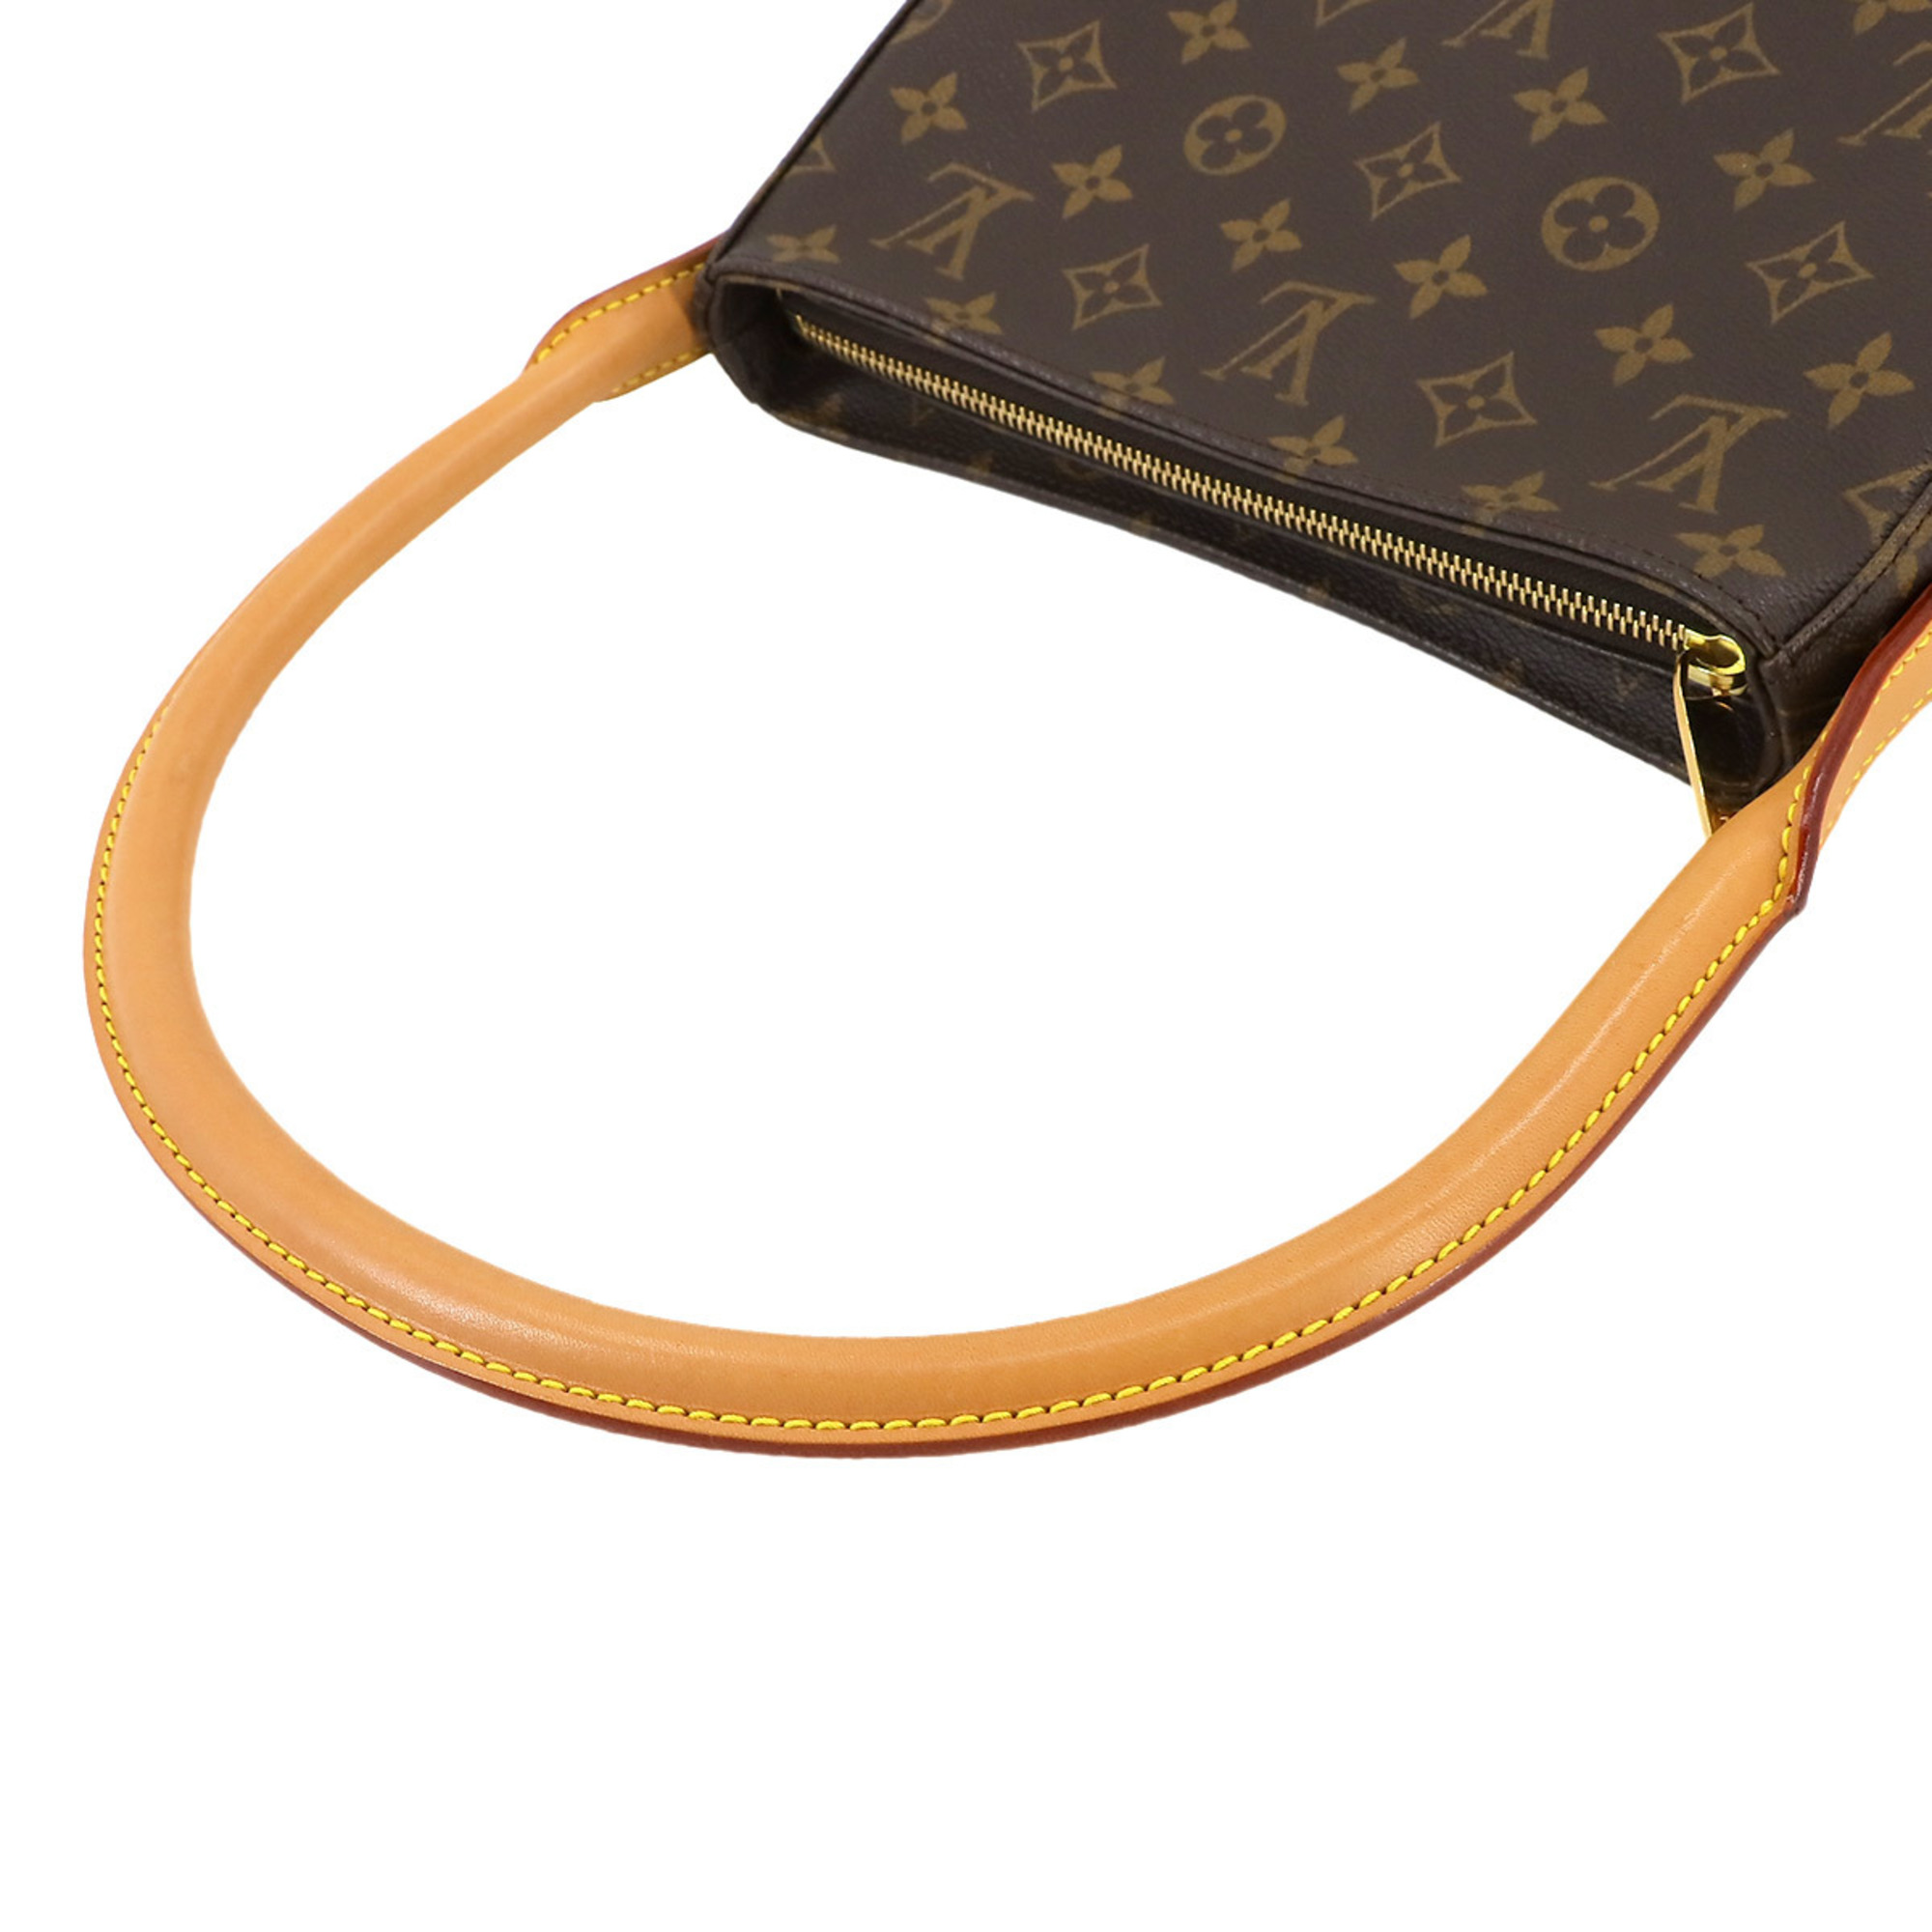 Louis Vuitton LOUIS VUITTON Monogram Looping MM Shoulder Bag Brown M51146